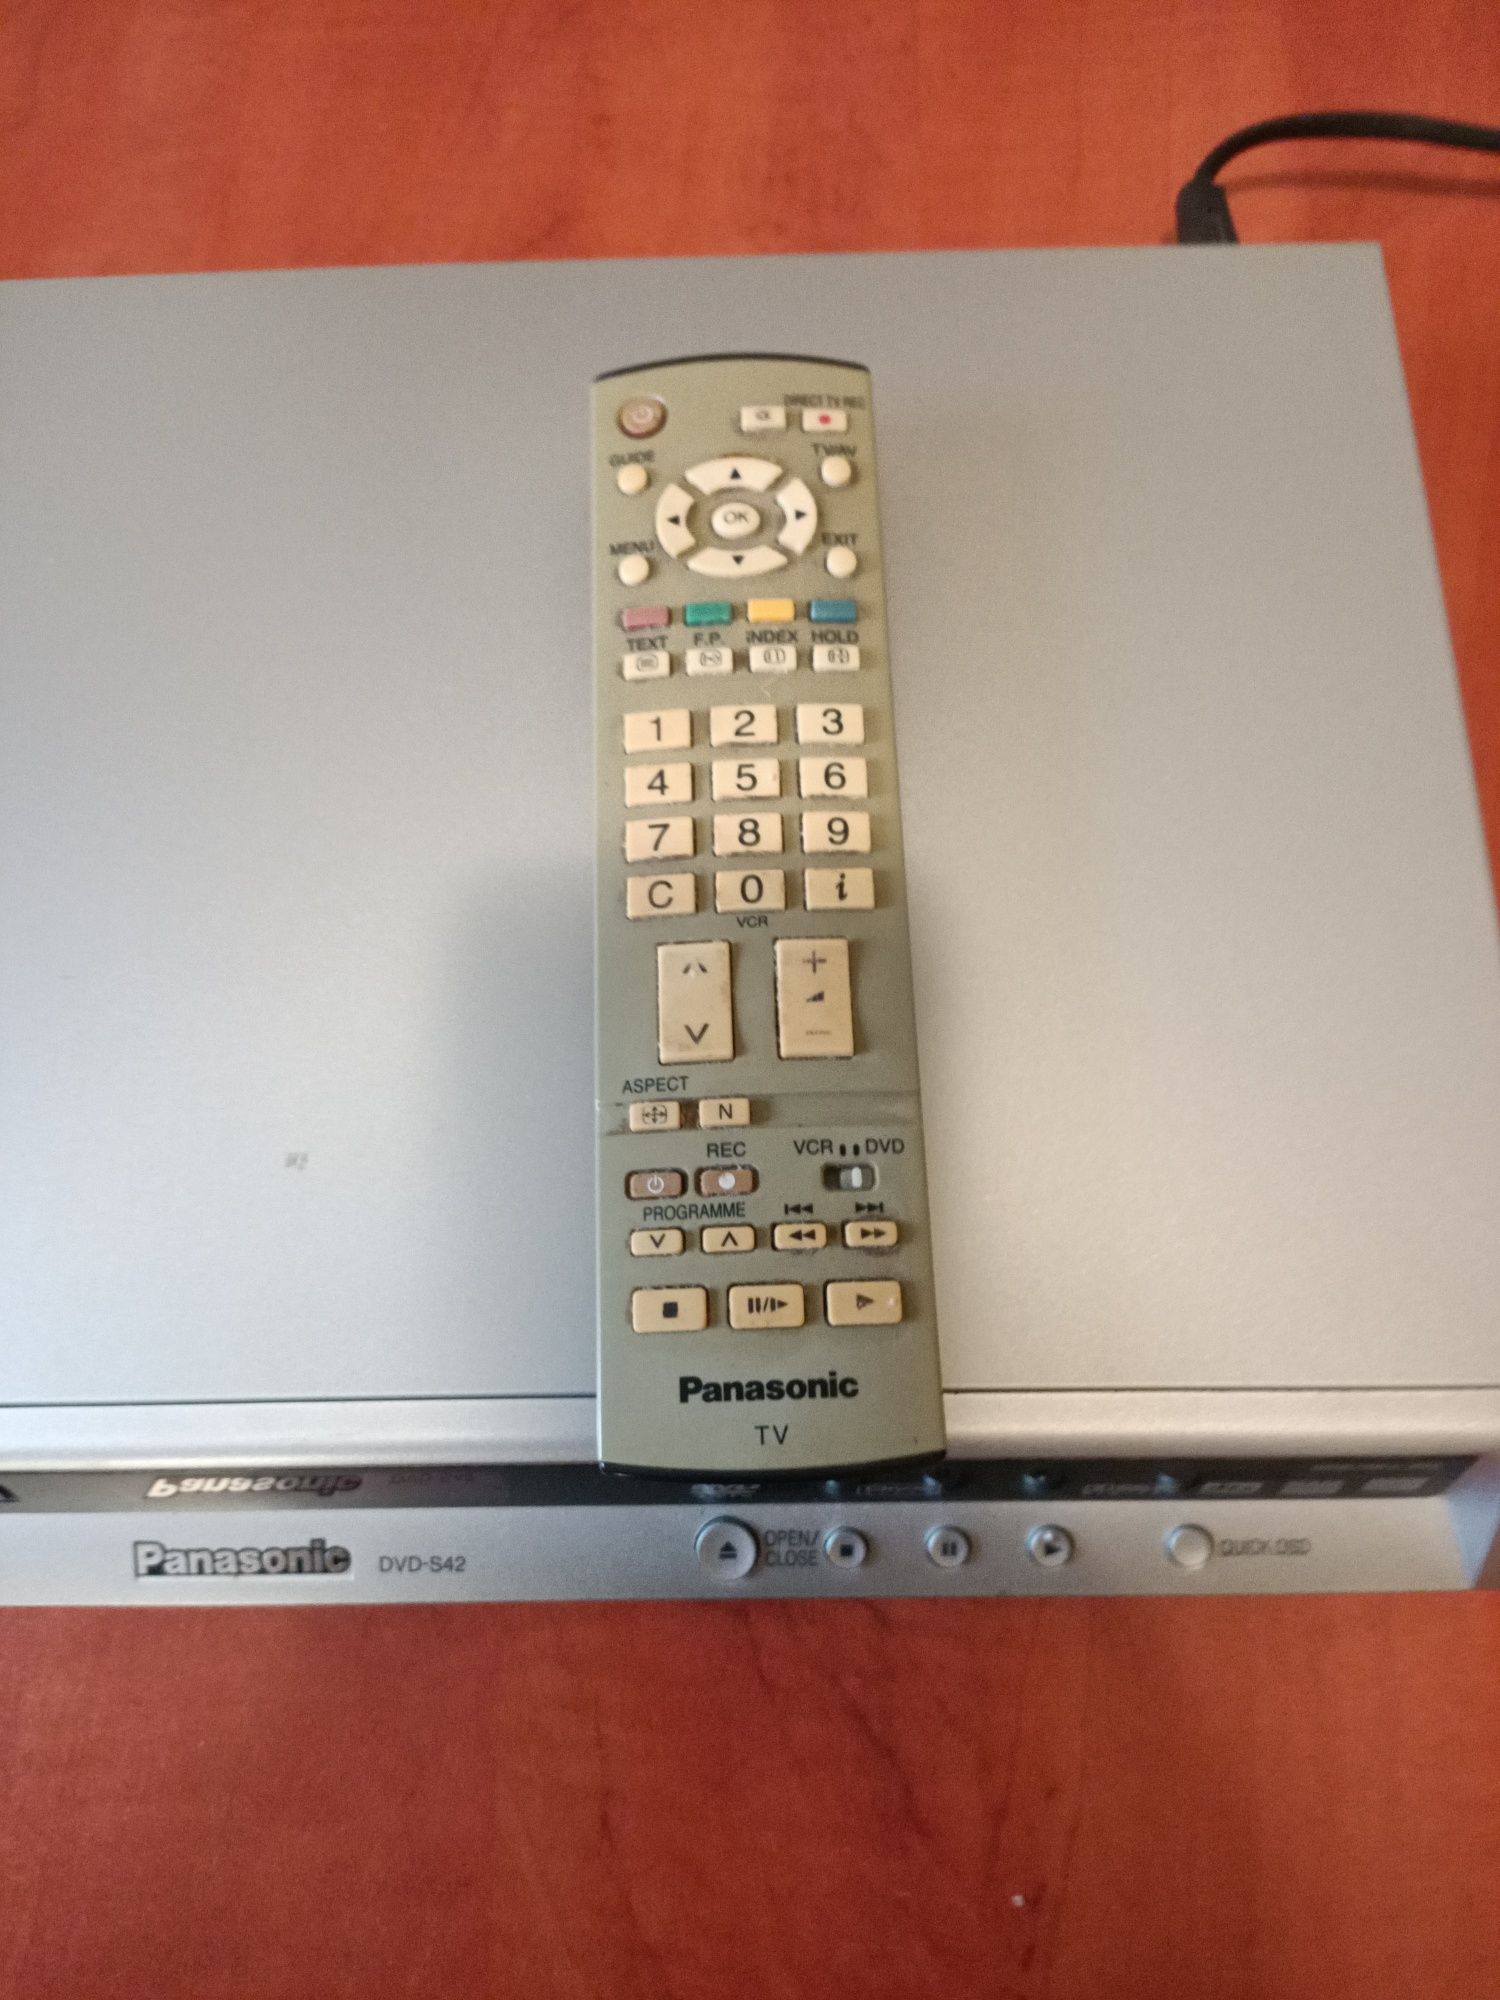 Odtważacz DVD/CD Panasonic-S42 z pilotem.